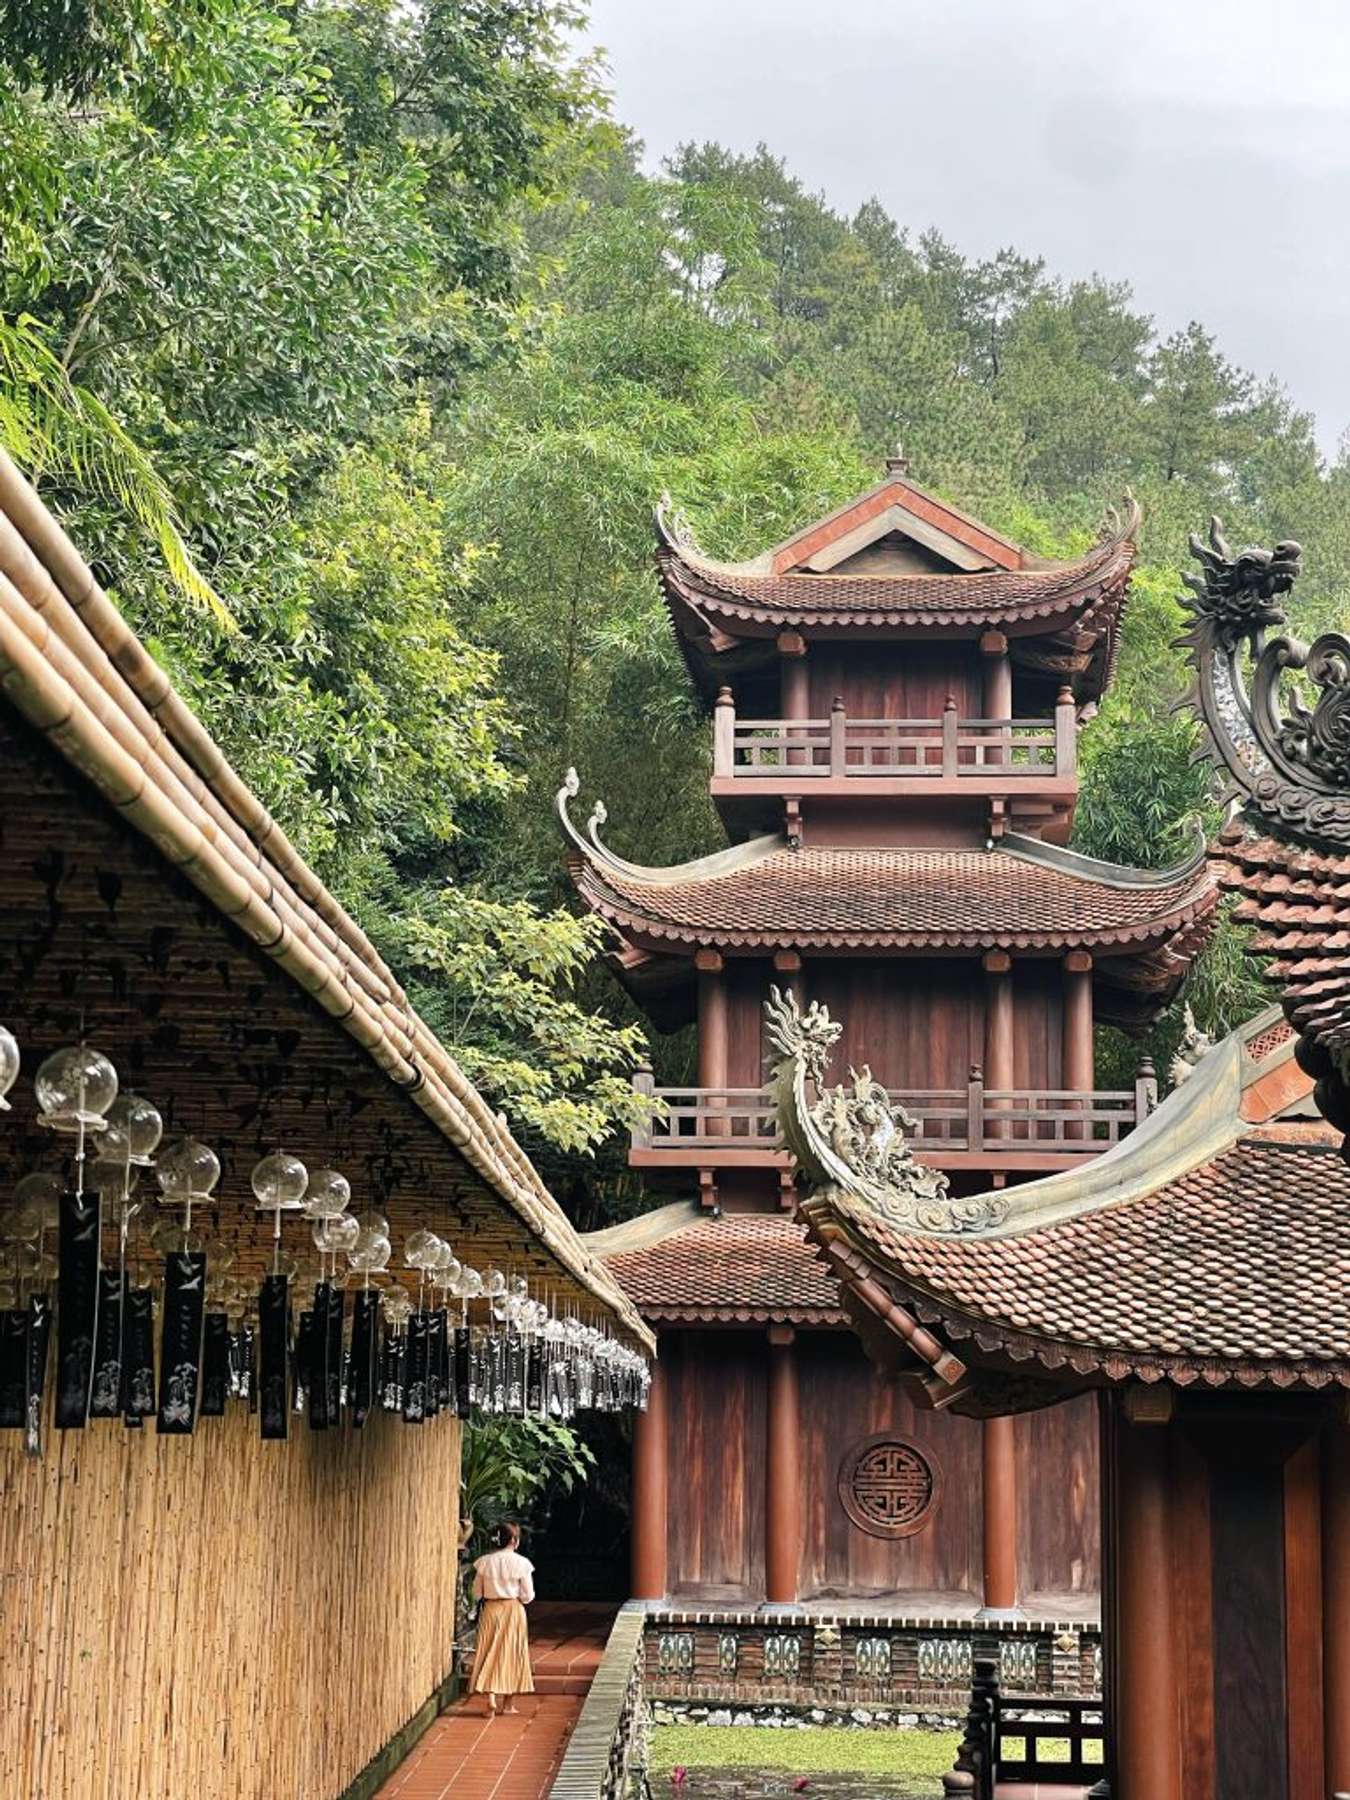 Tỉnh nhỏ thứ 2 Việt Nam được giải thưởng du lịch quốc tế, có nhiều chùa đẹp, cách Hà Nội chưa tới 100km - Ảnh 7.